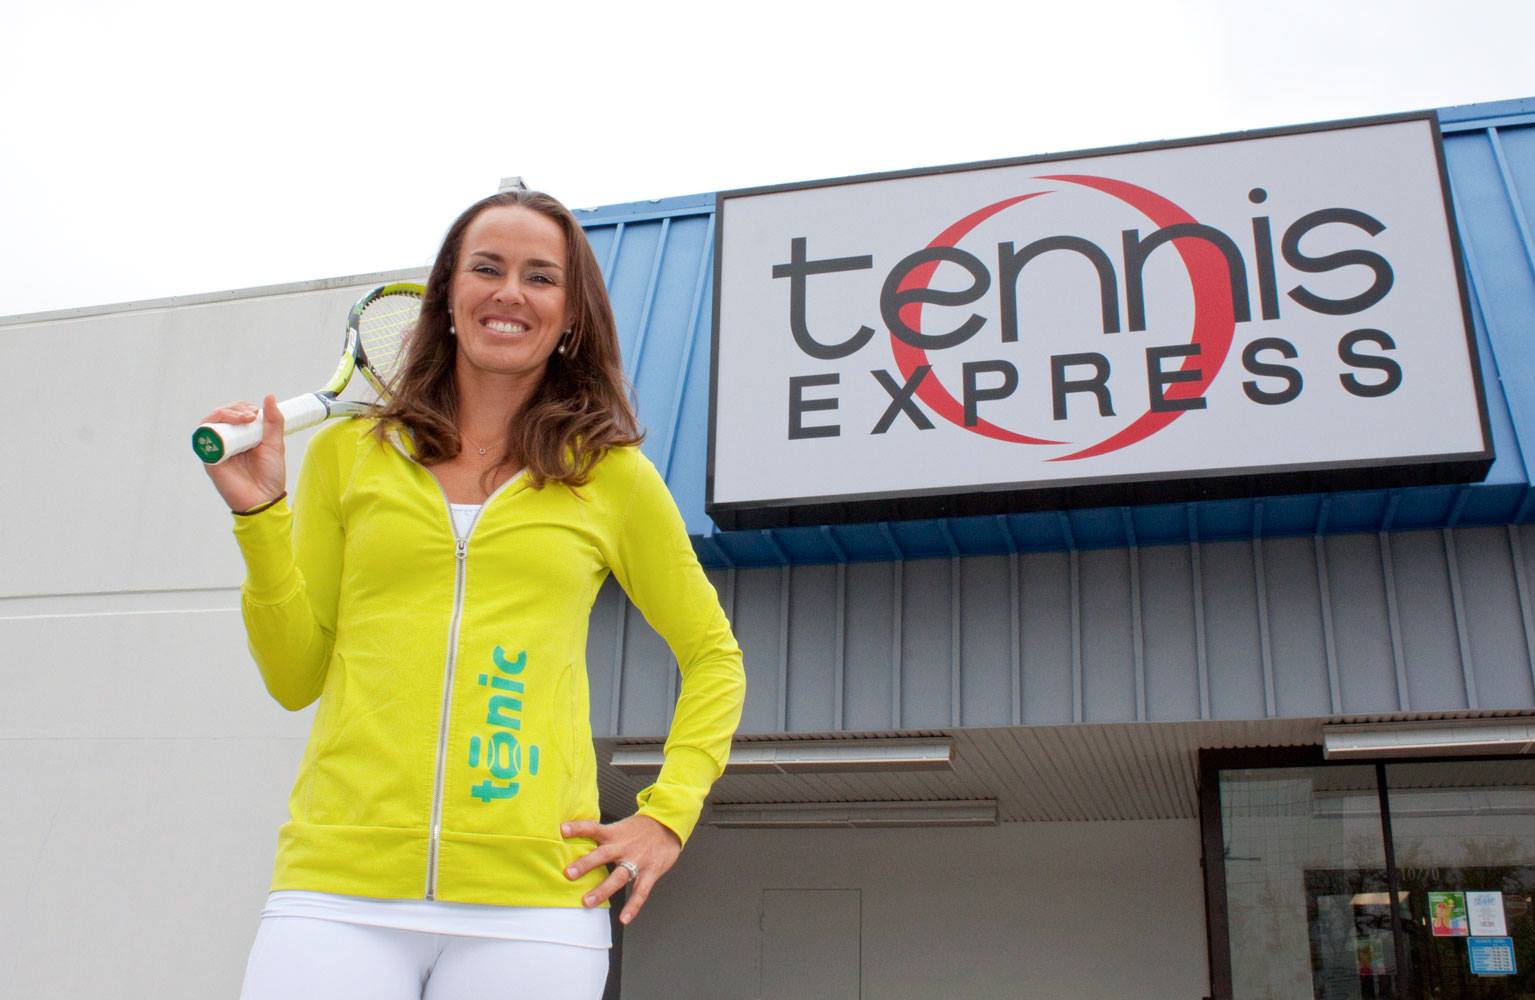 Martina Hingis Talks Tonic at Tennis Express